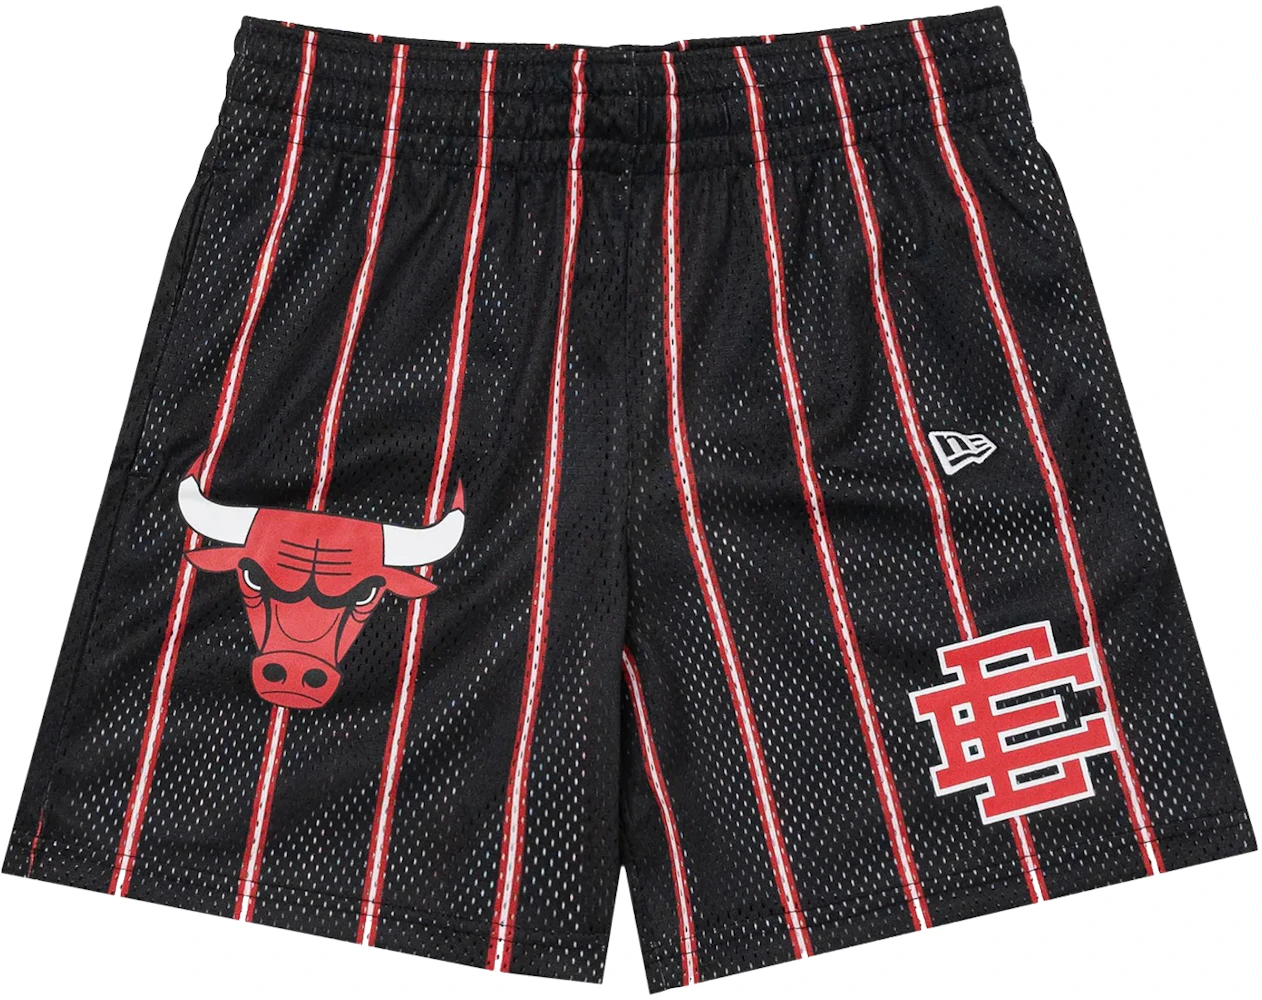 Chicago Bulls Shorts -  Canada